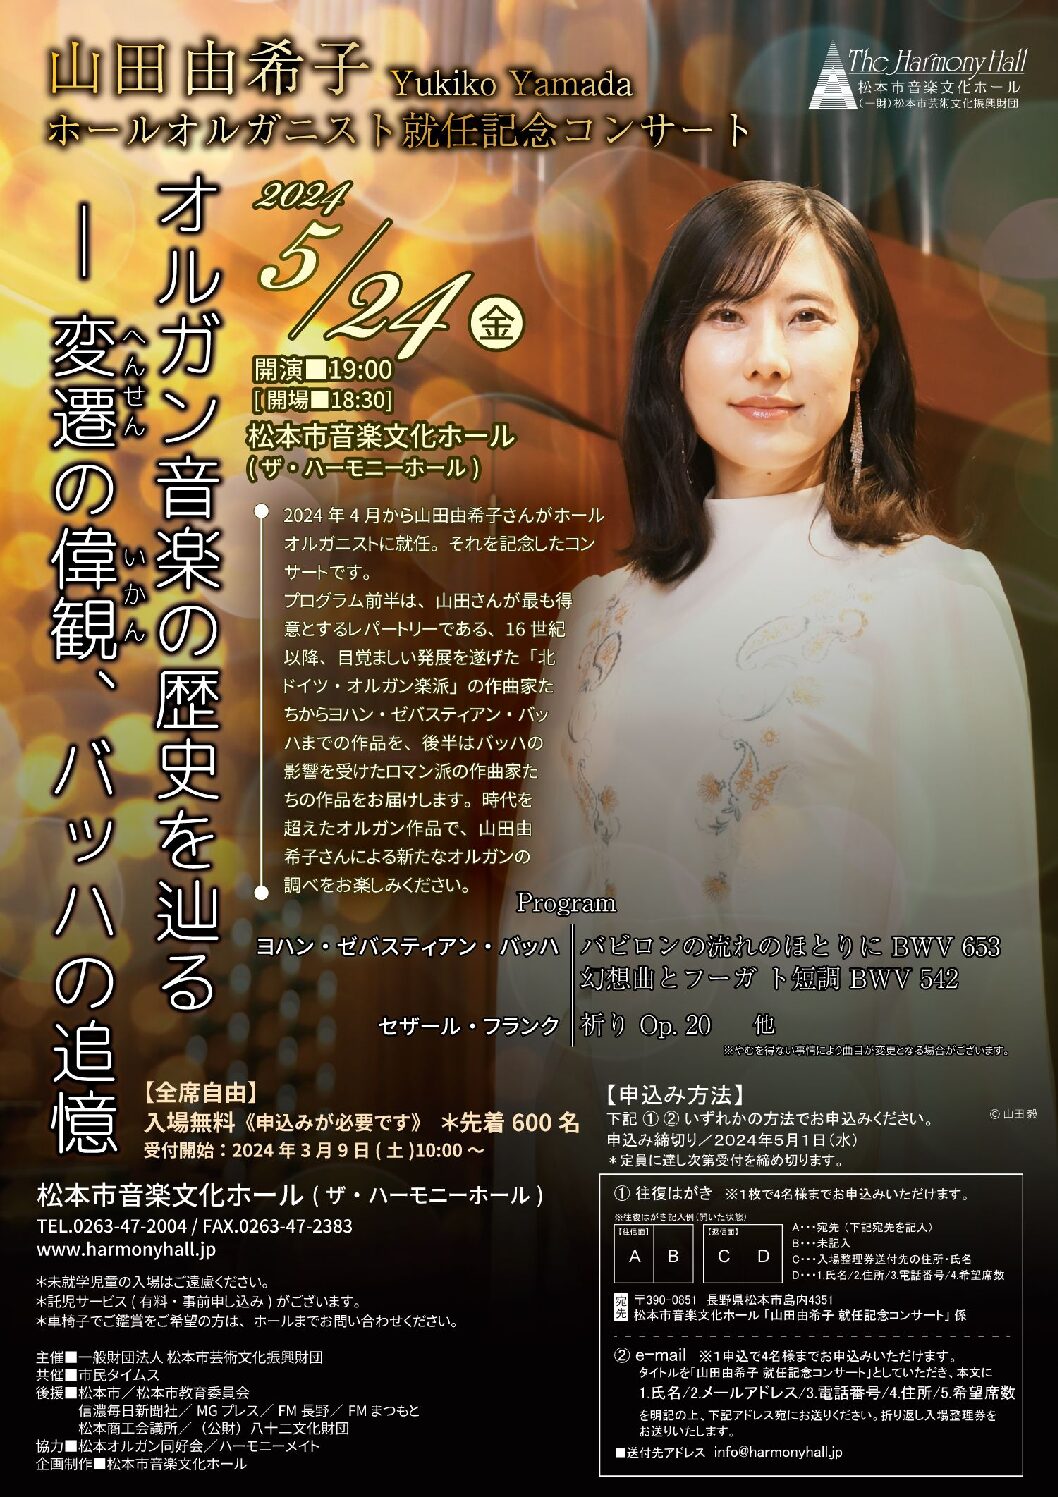 山田由希子ホールオルガニスト就任記念コンサート